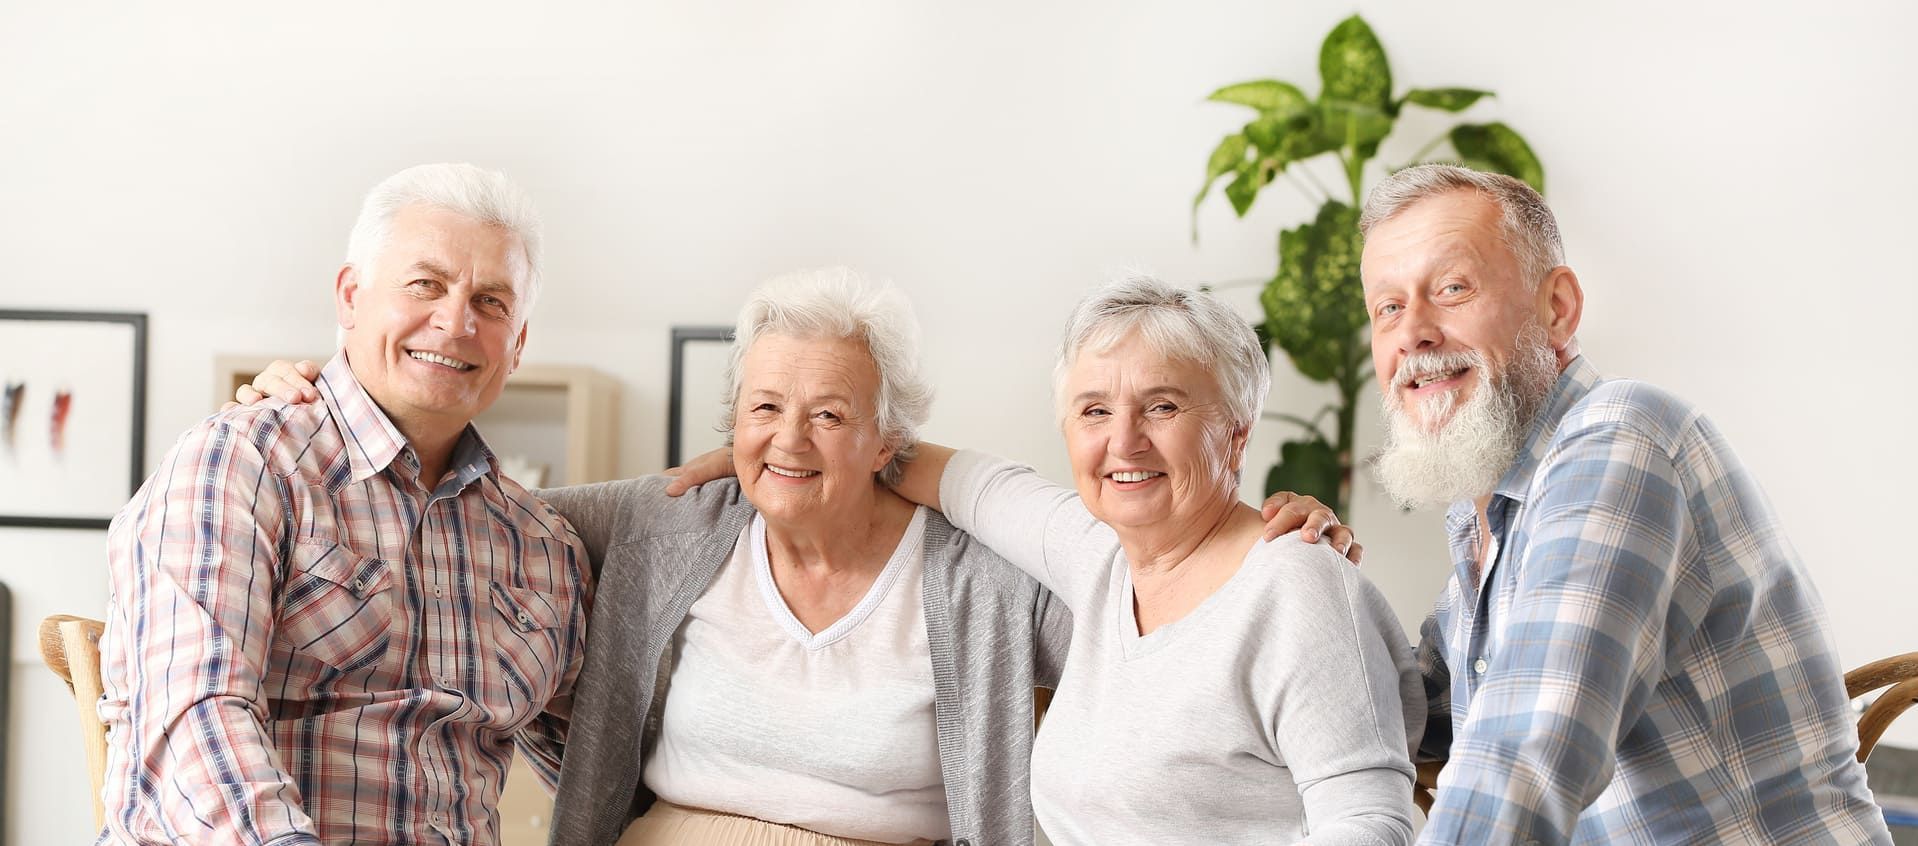 Eine Gruppe älterer Menschen posiert gemeinsam für ein Foto in einem Wohnzimmer.